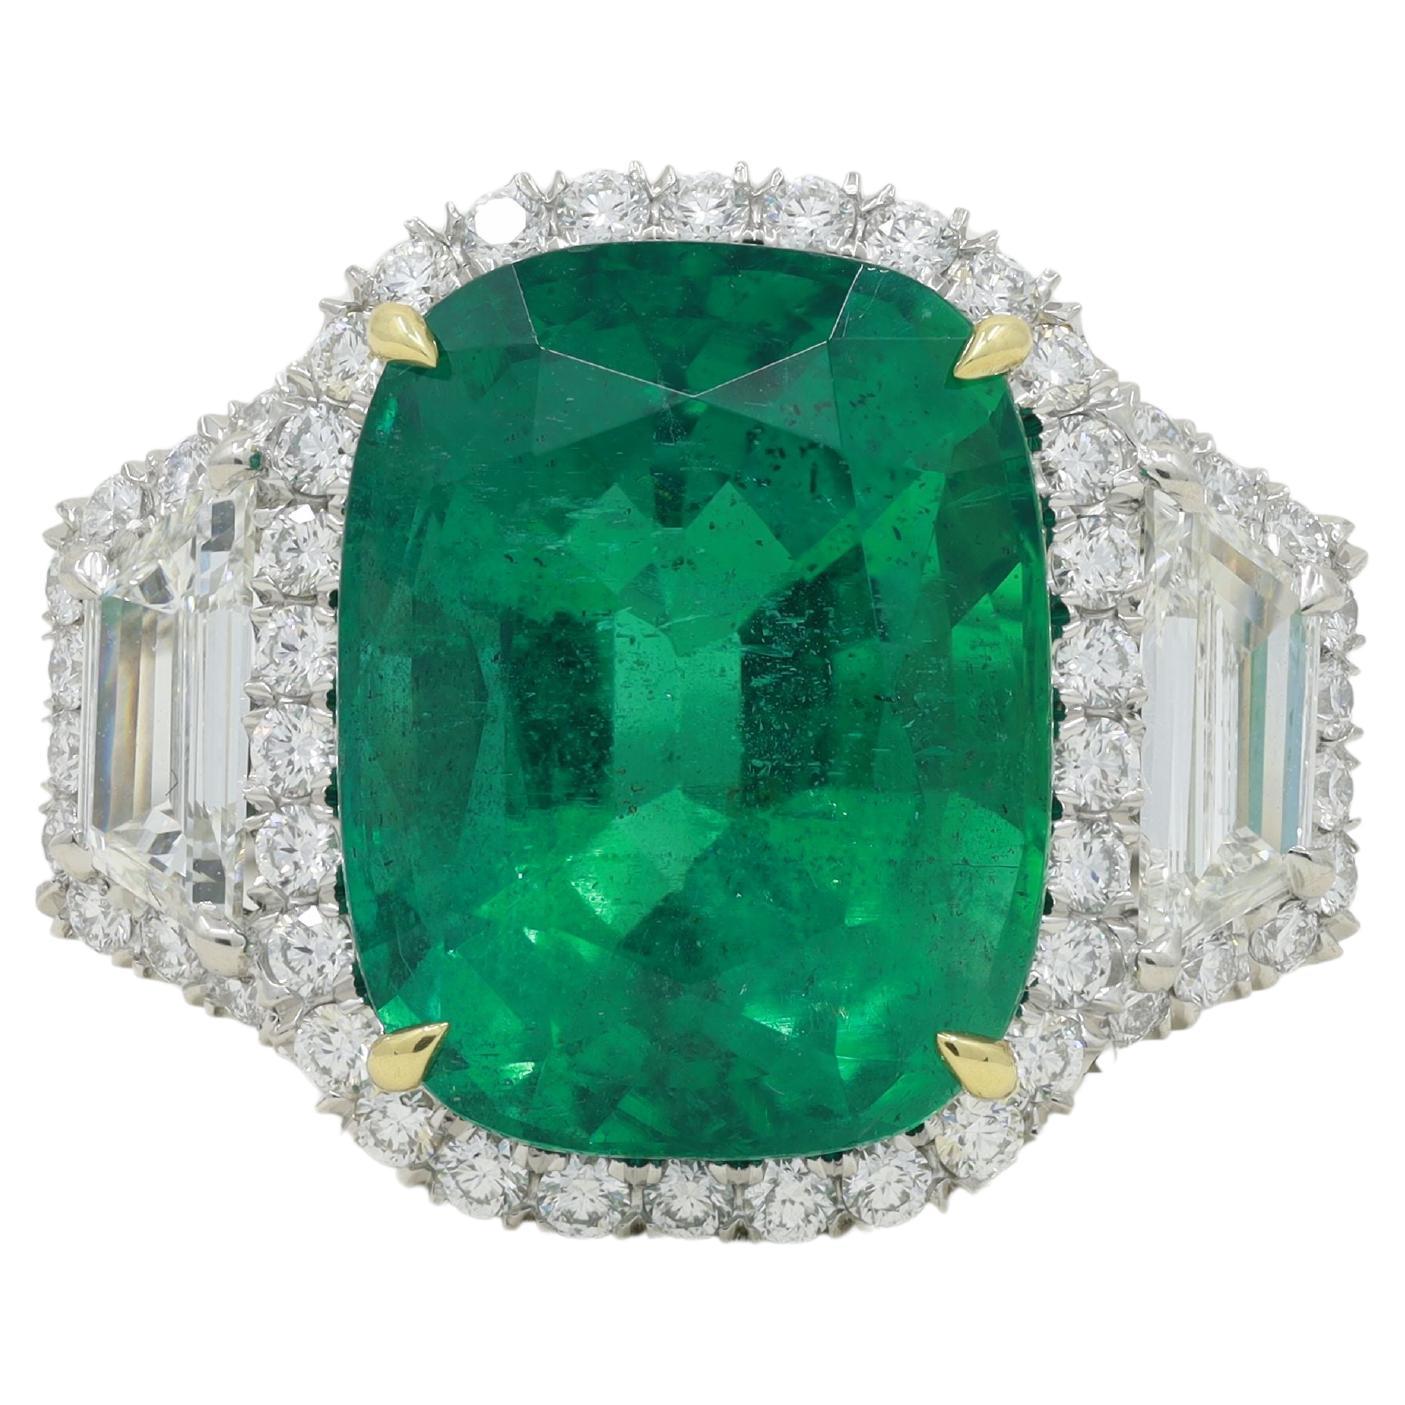 Smaragd- und Diamantring aus Platin und 18 kt Gelbgold mit einem grünen Smaragd im Kissenschliff von 11,22 ct, umgeben von Diamanten und Stufentrapezen mit einem Gewicht von 2,85 ct tw in einer Halo-Fassung.
Diana M. ist seit über 35 Jahren ein